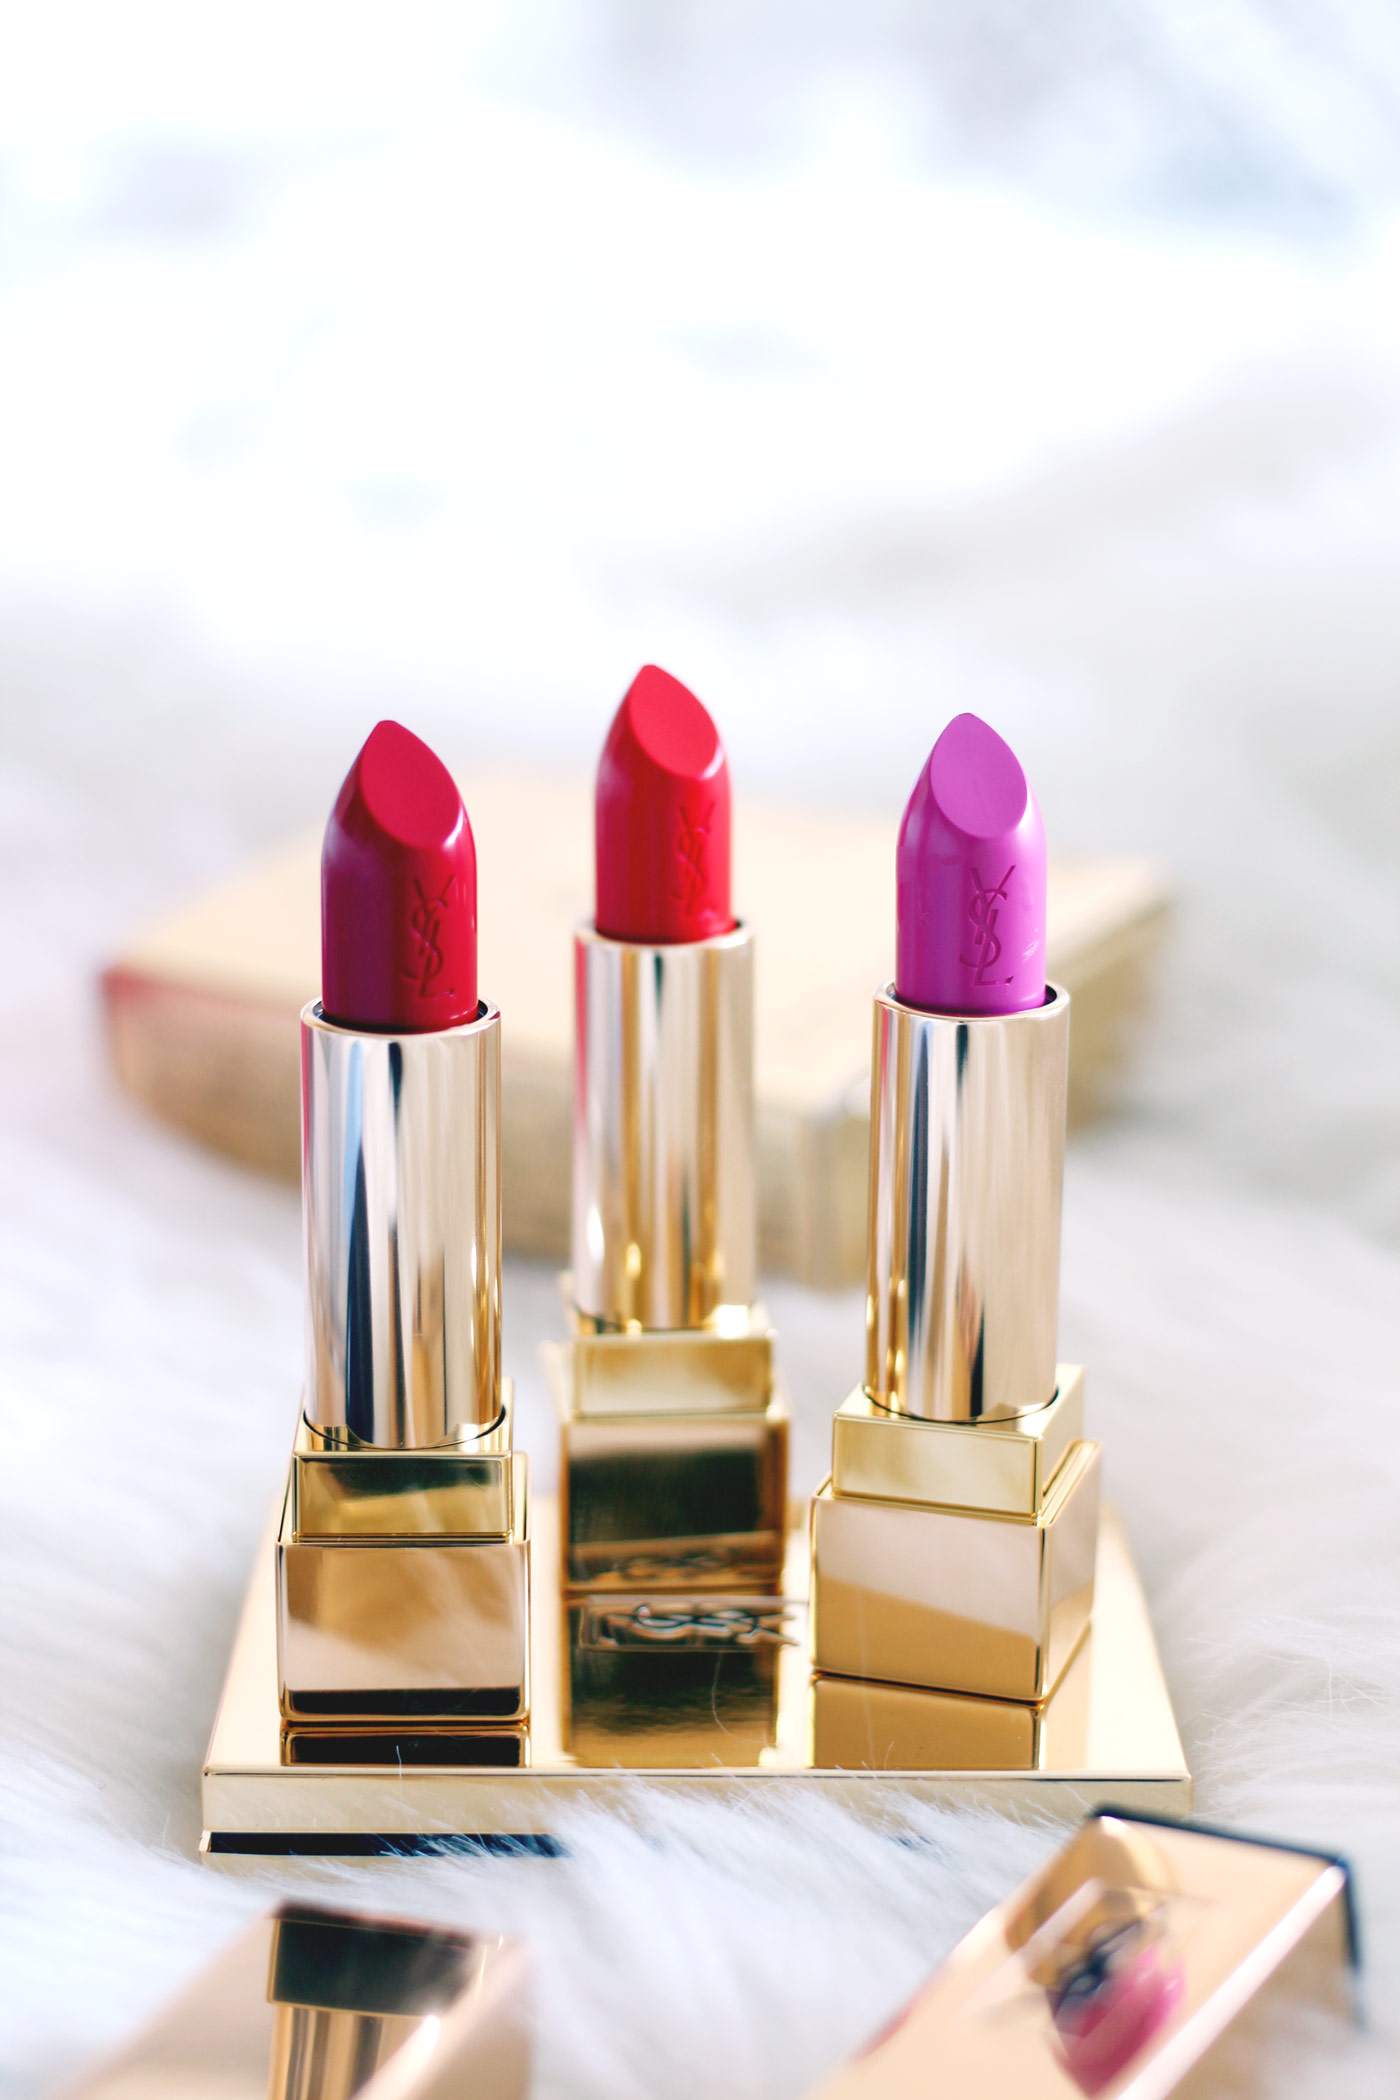 world-durt-free-haul-YSL-lipsticks-exclusives-1